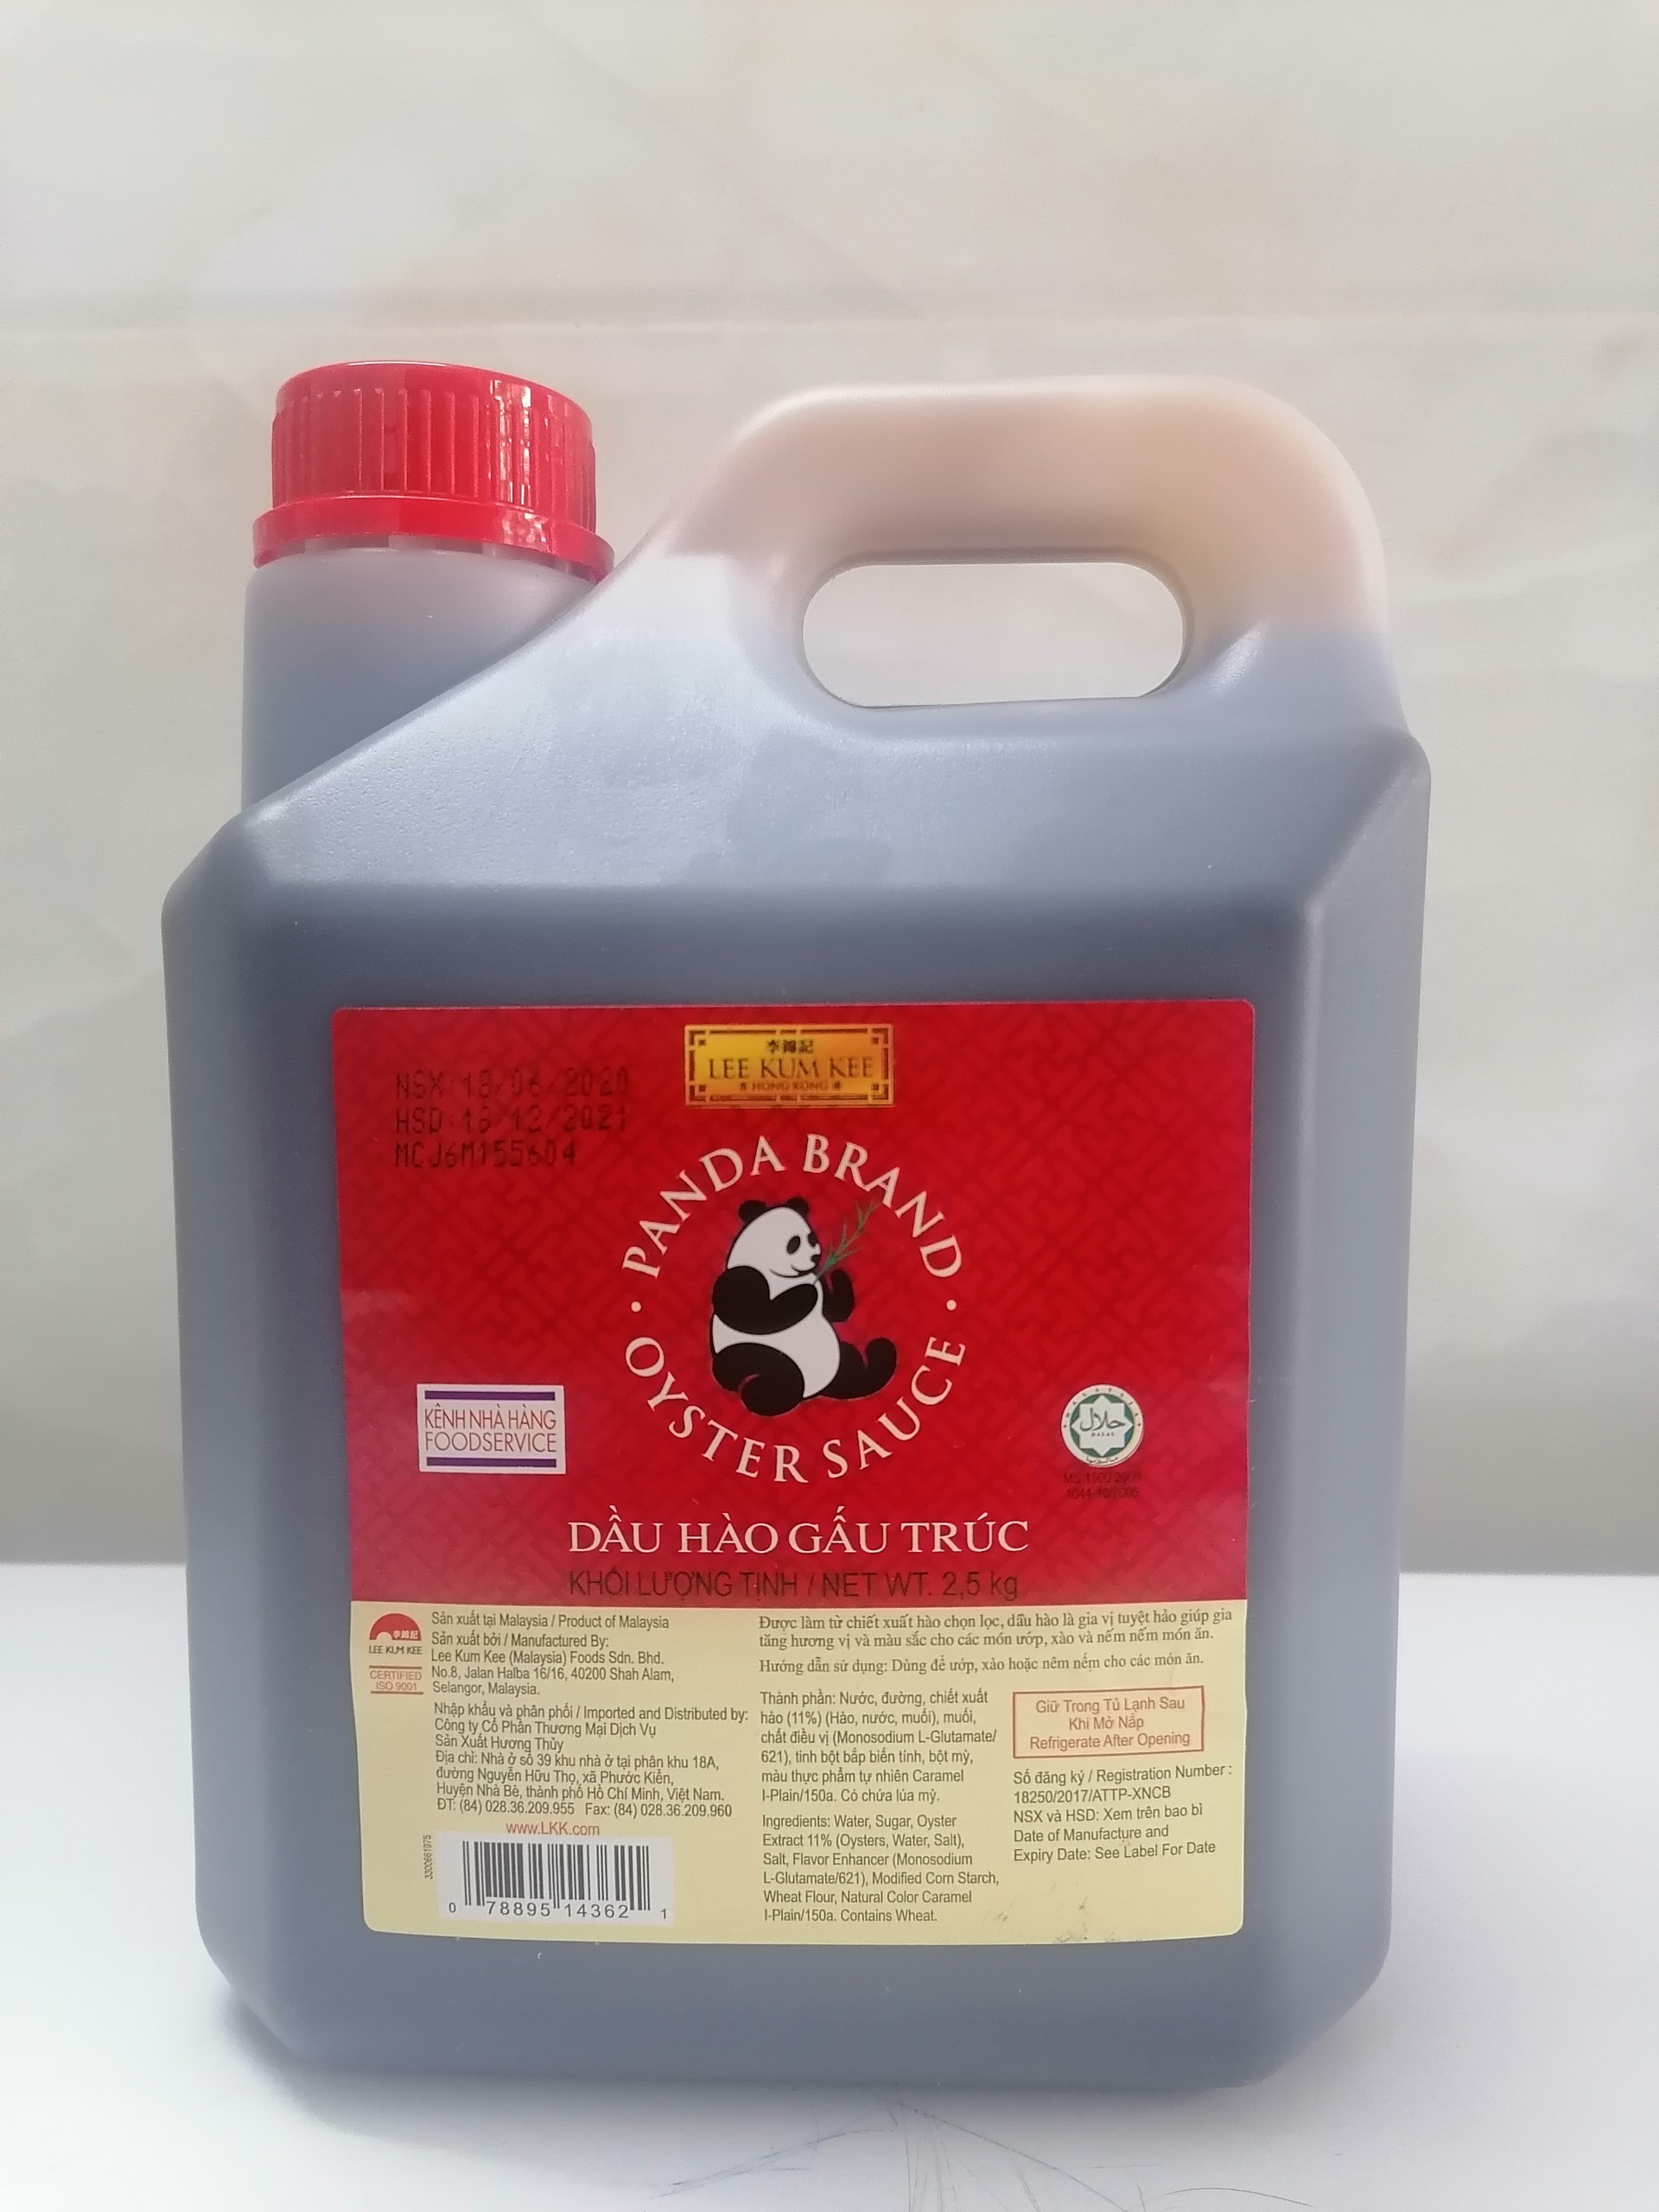 BÌNH NHỰA 2.5 Kg DẦU HÀO GẤU TRÚC Malaysia LEE KUM KEE Panda Brand Oyster